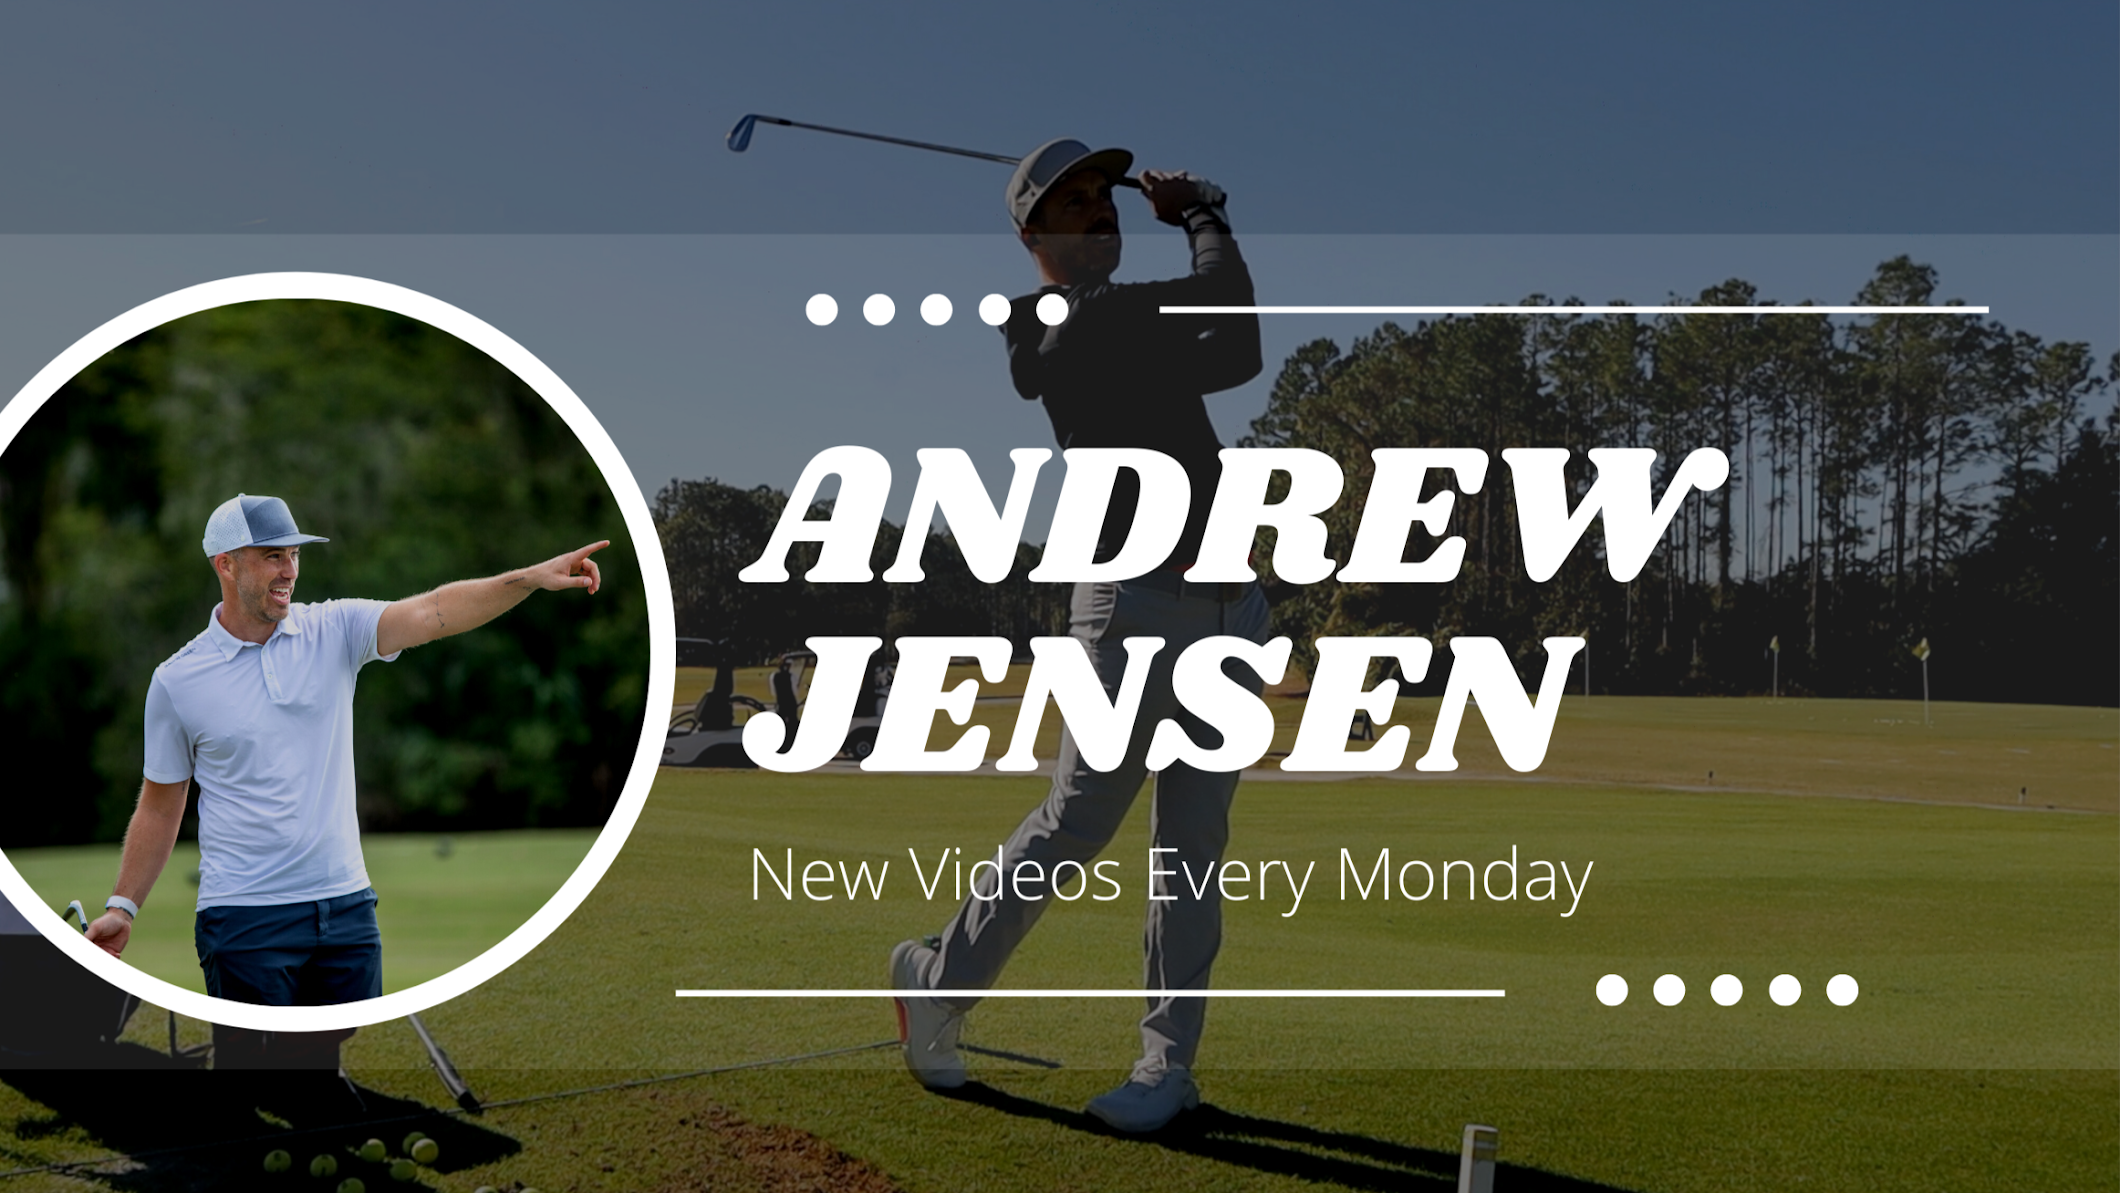 Andrew Jensen Golf